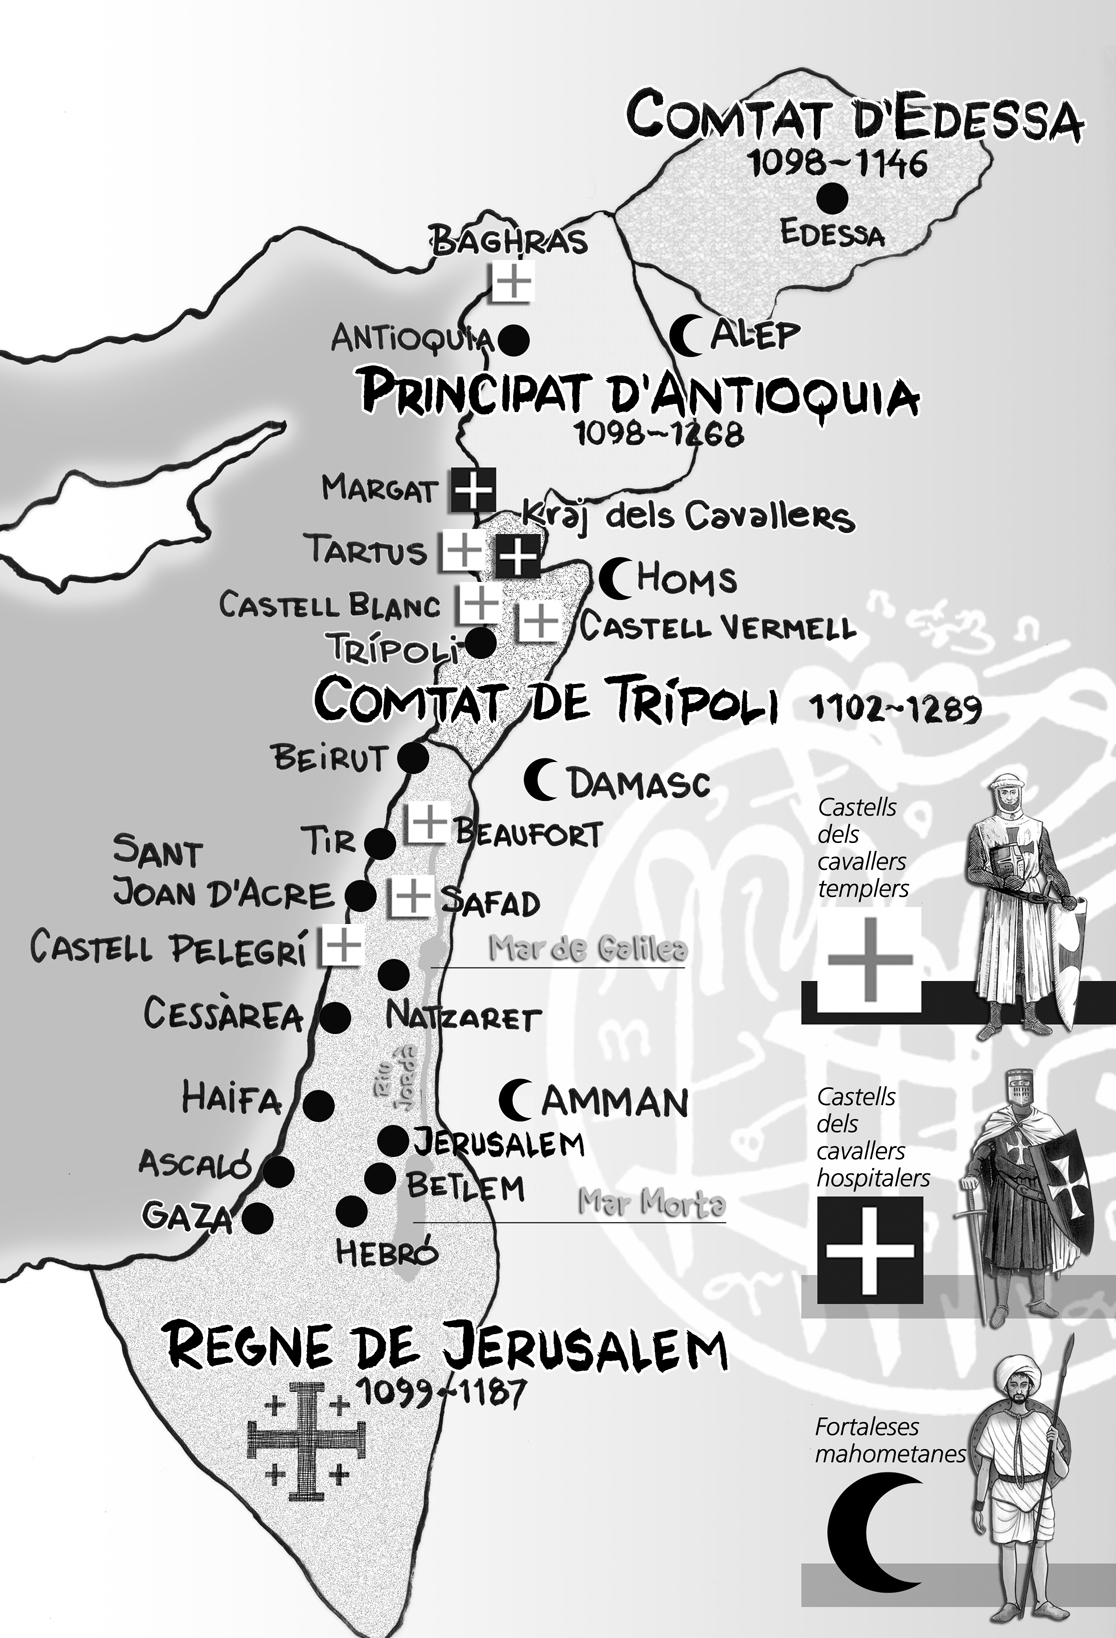 28.04.2009 El 1099, els cristians conquereixen <strong>Terra Santa</strong>. Dibuix del mapa amb les principals forces combatents a Terra Santa, ciutats i enclavaments crucials per ambdues bandes-                      -  Jordi Bibià